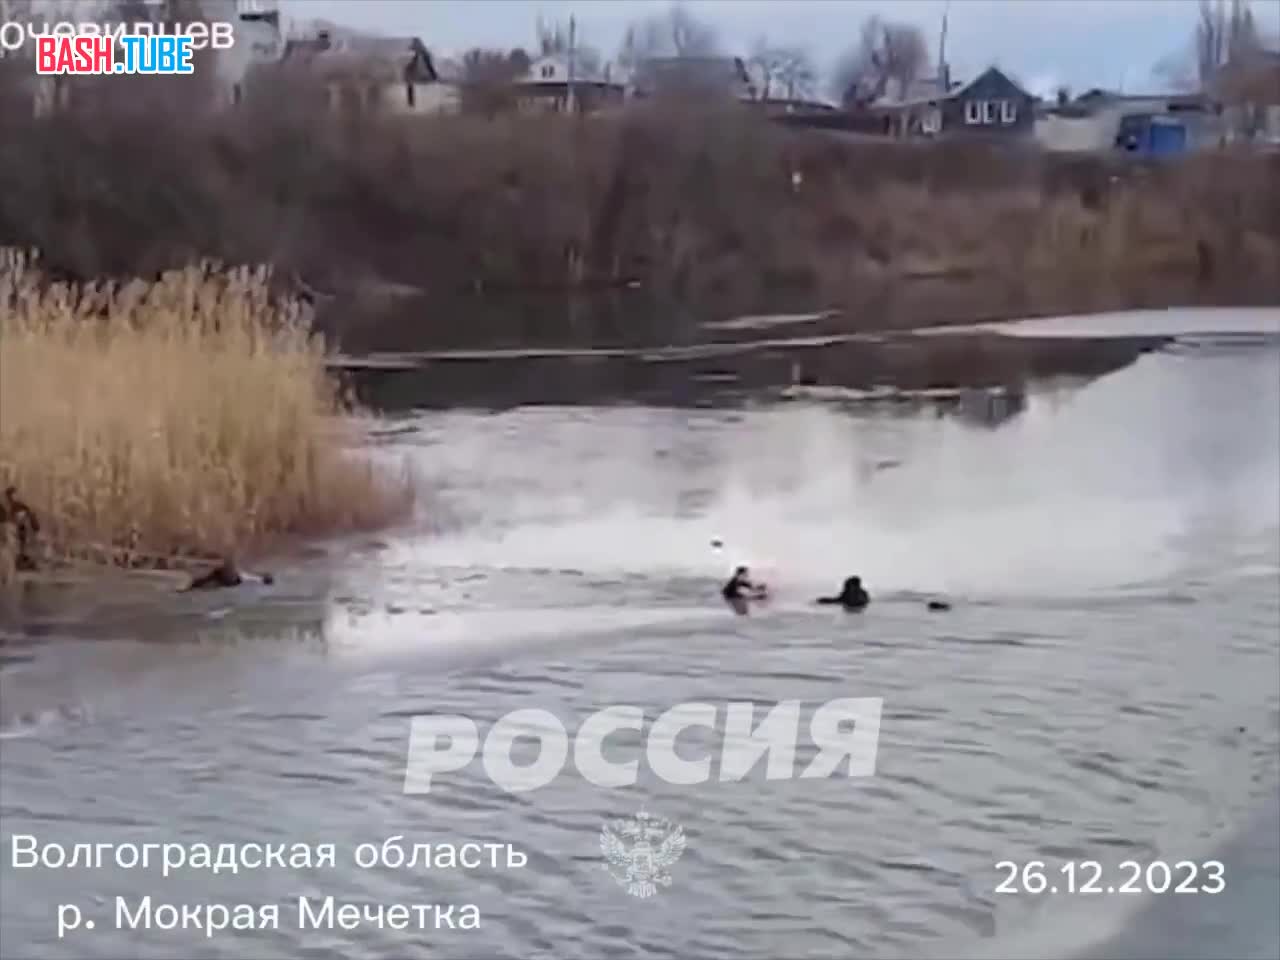  Полицейский в Волгоградской области спас шестиклассника, который провалился под лёд и начал тонуть